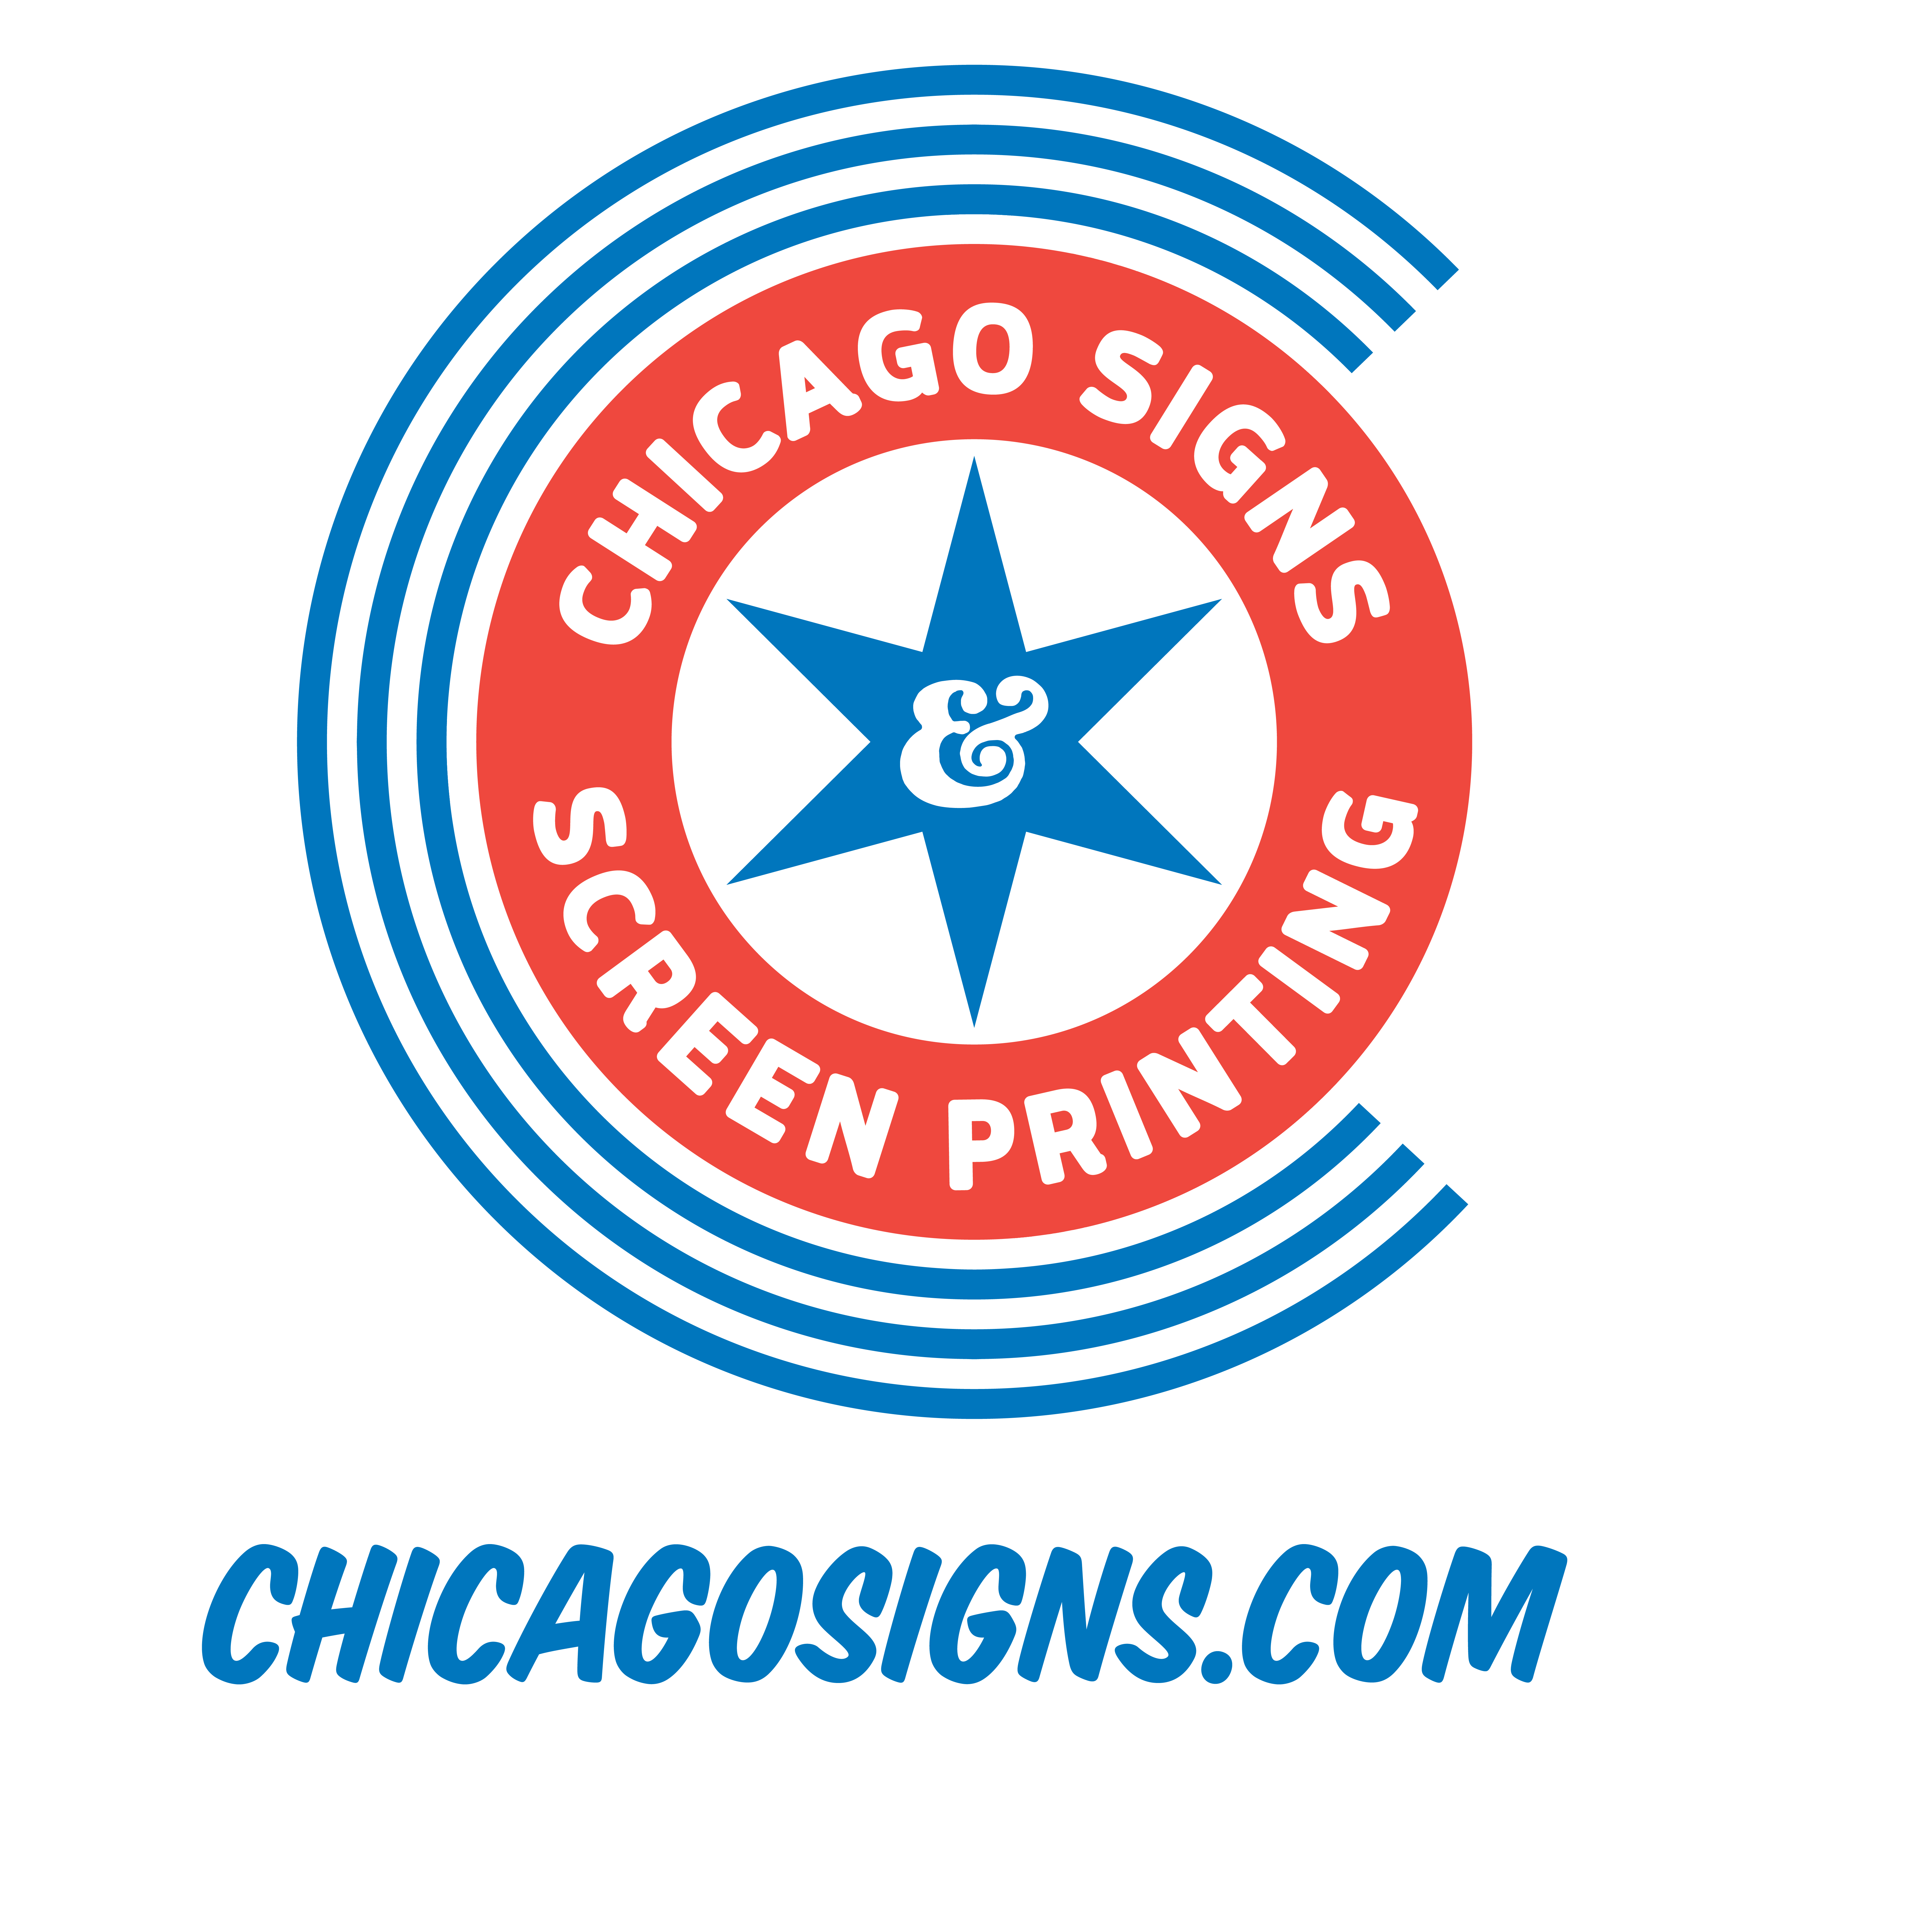 (c) Chicagosigns.com